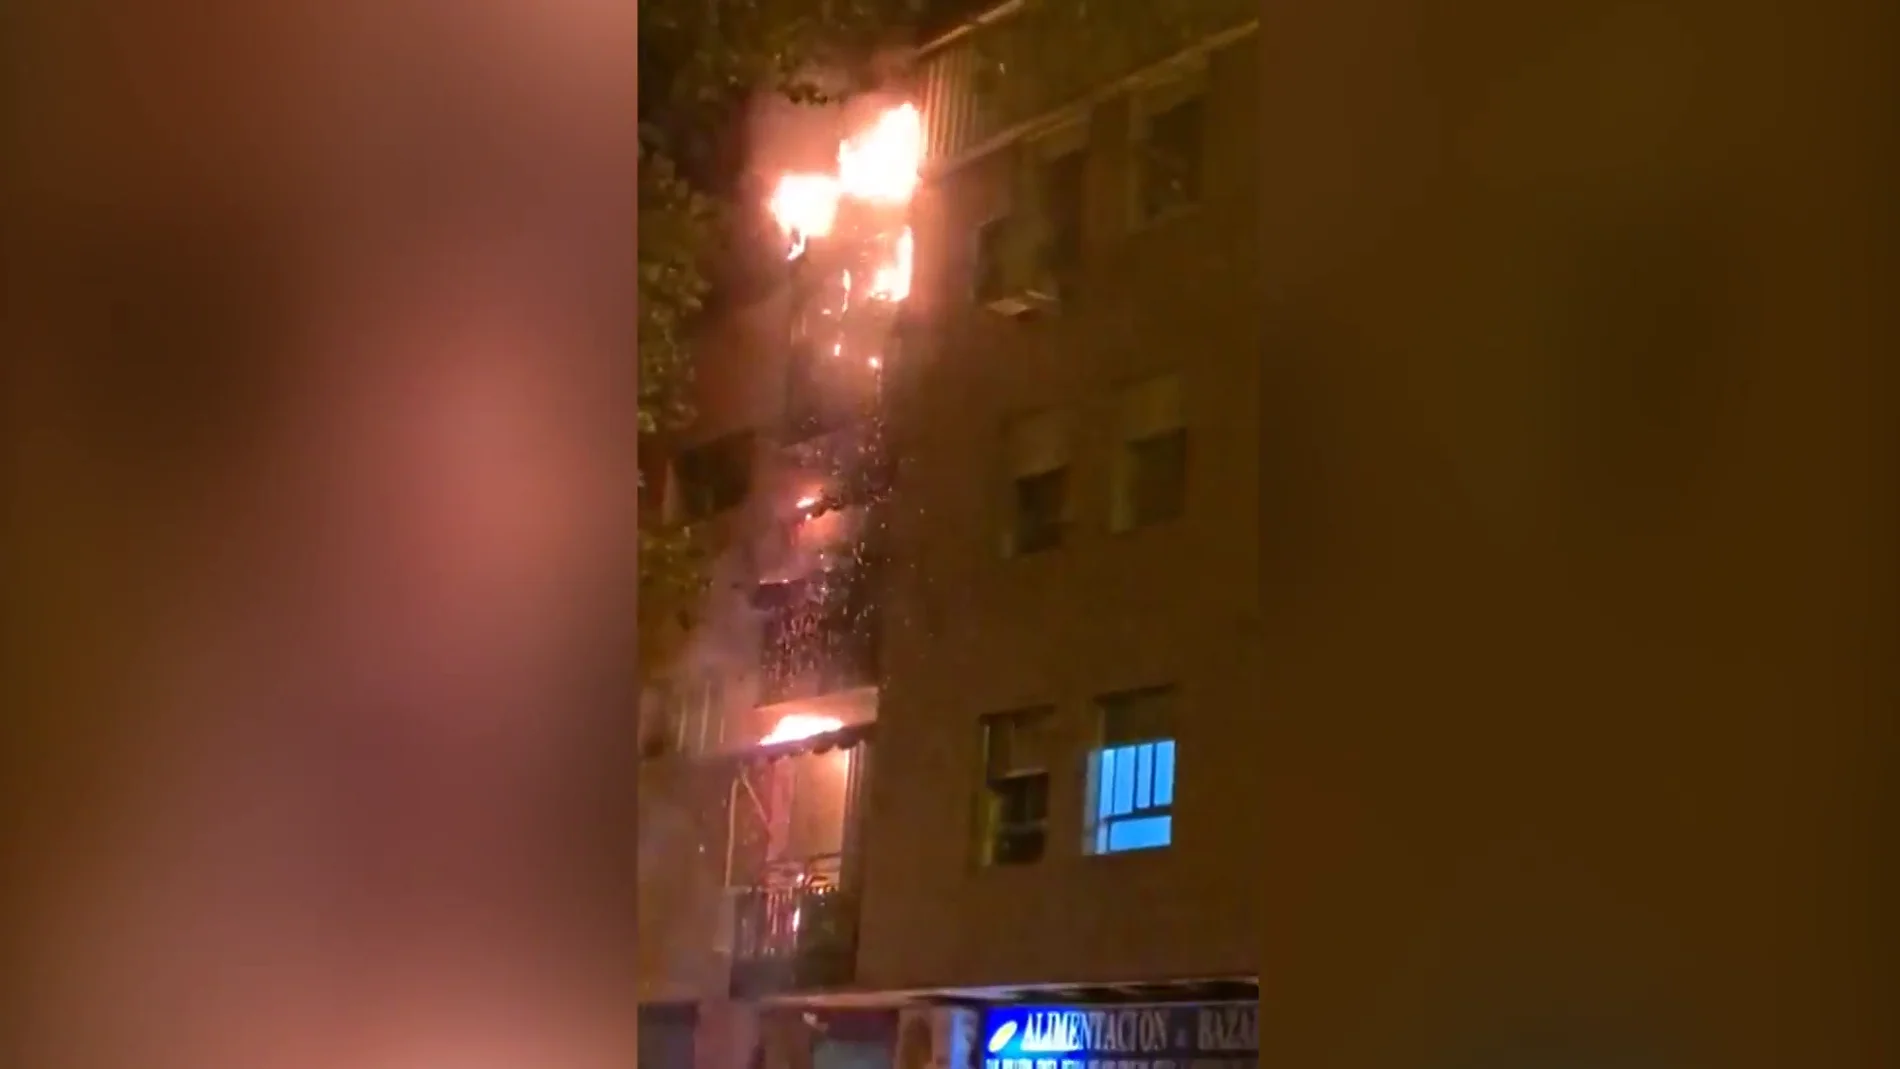 Imagen del incendio registrado en Madrid